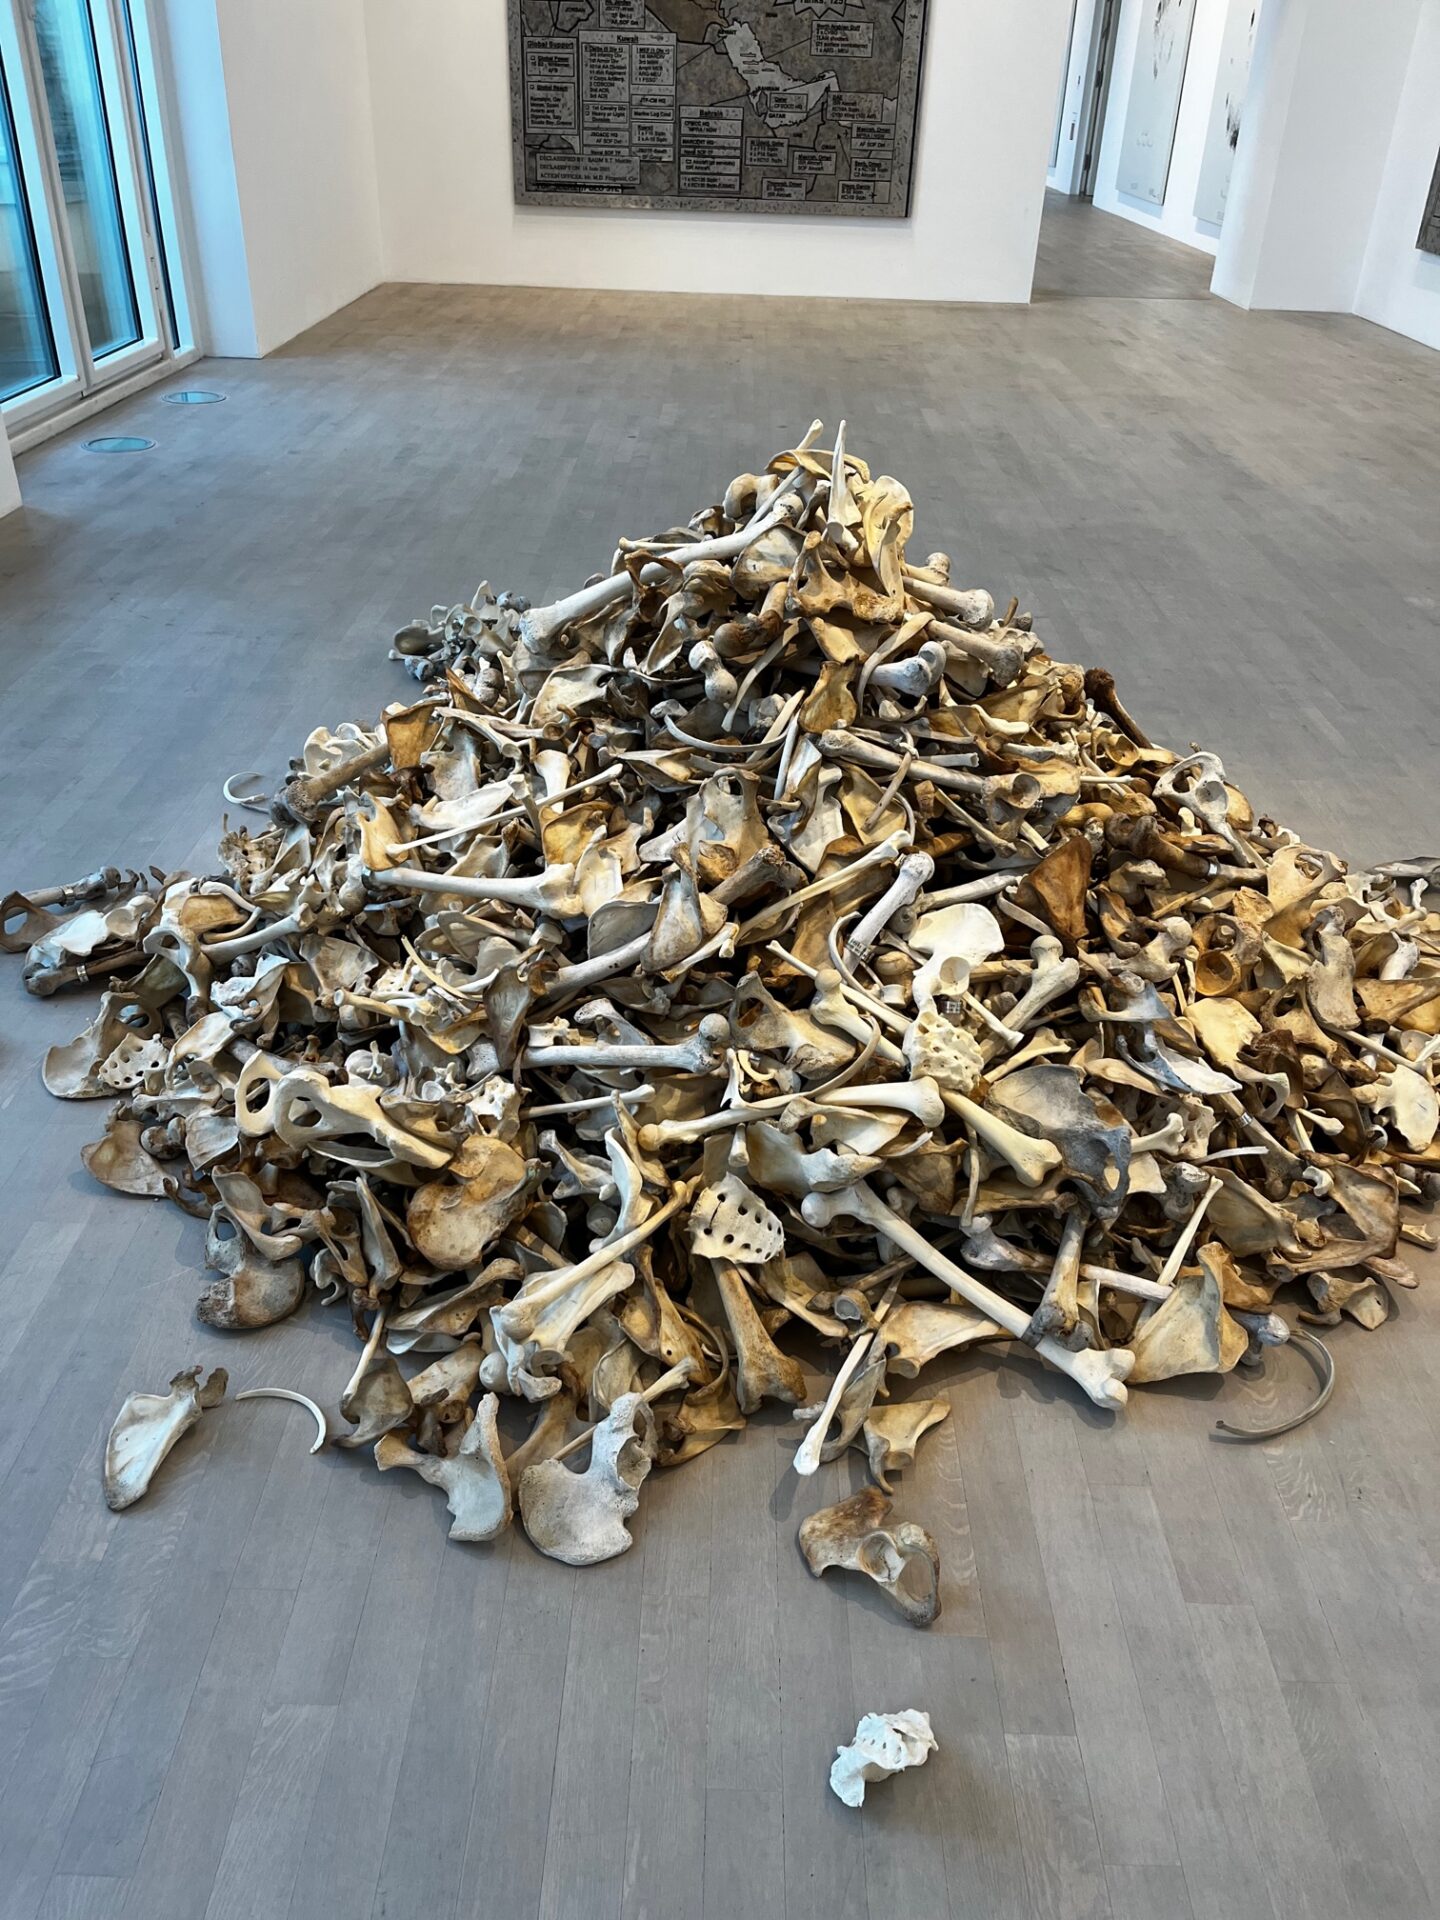 Ausstellungsansicht von Jenny Holzers Ausstellung im K 21 in Düsseldorf, ein großer Haufen mit Knochen, Beckenschaufel und Oberschenkelknochen sind zu erkennen,